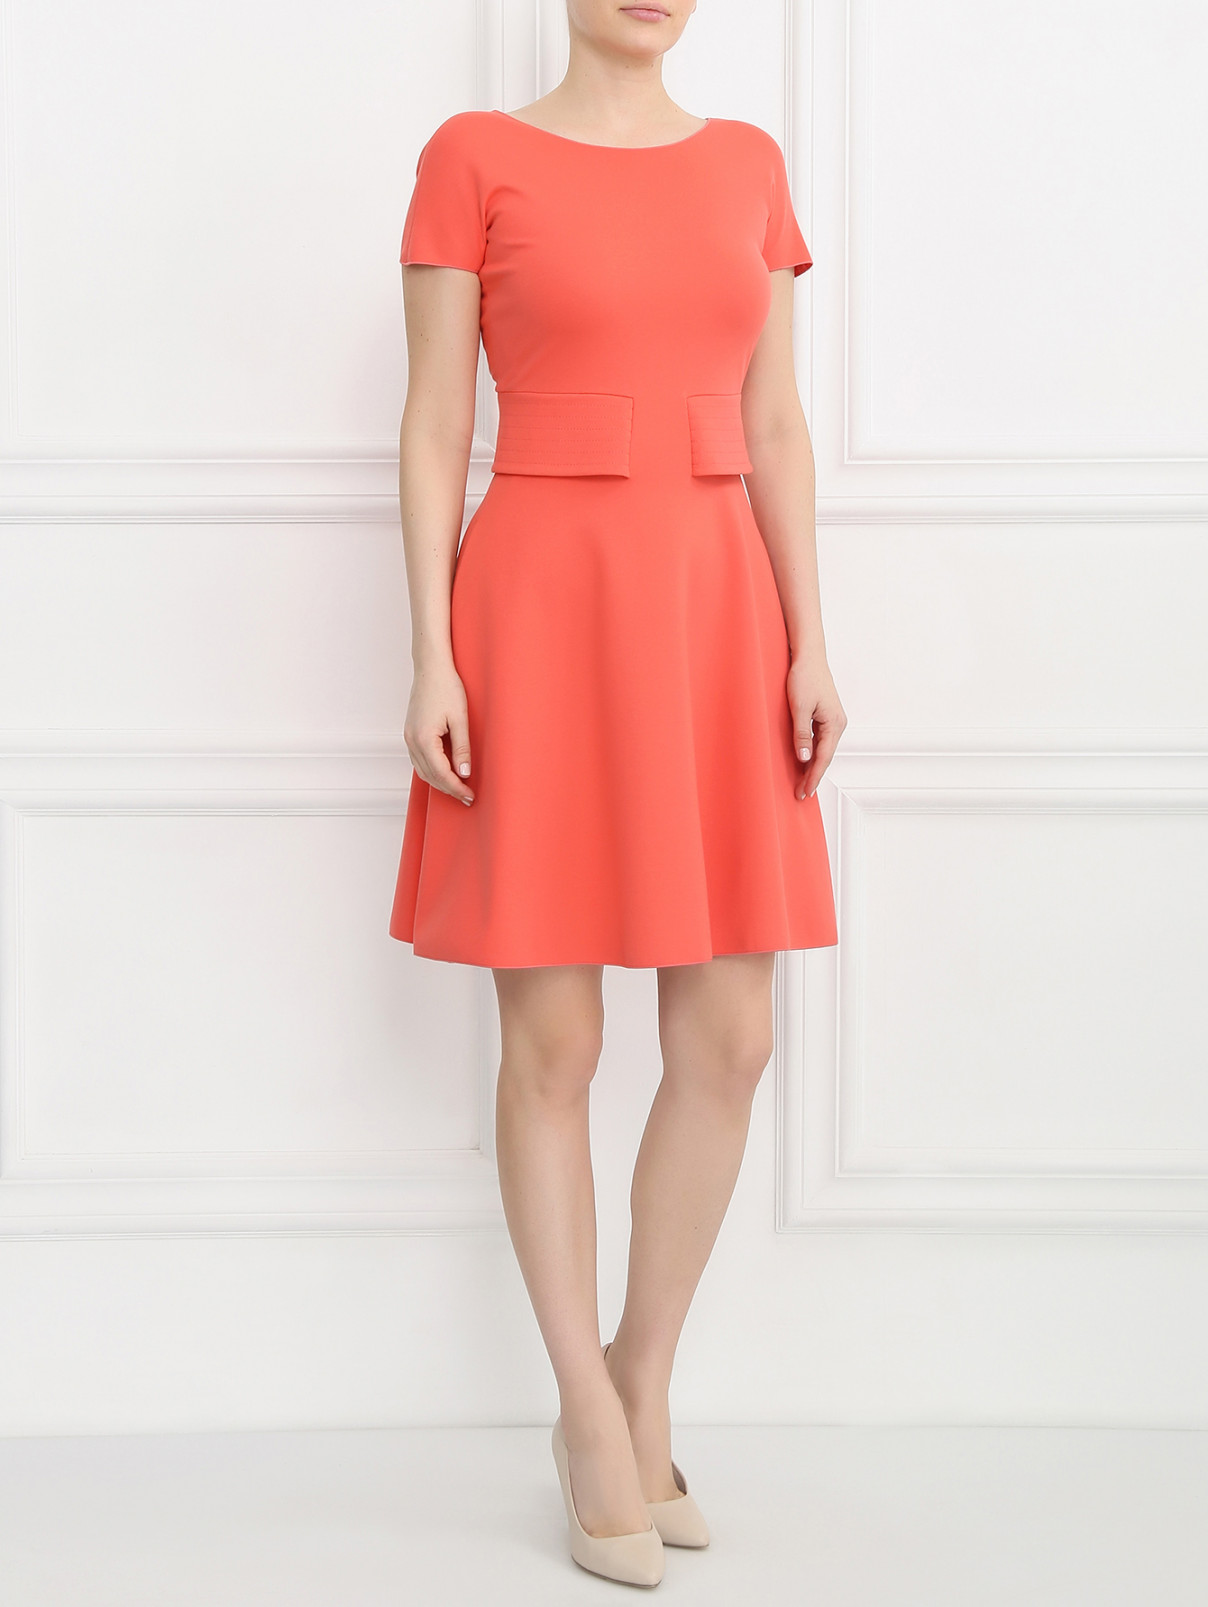 Платье-мини с короткими рукавами Armani Collezioni  –  Модель Общий вид  – Цвет:  Розовый